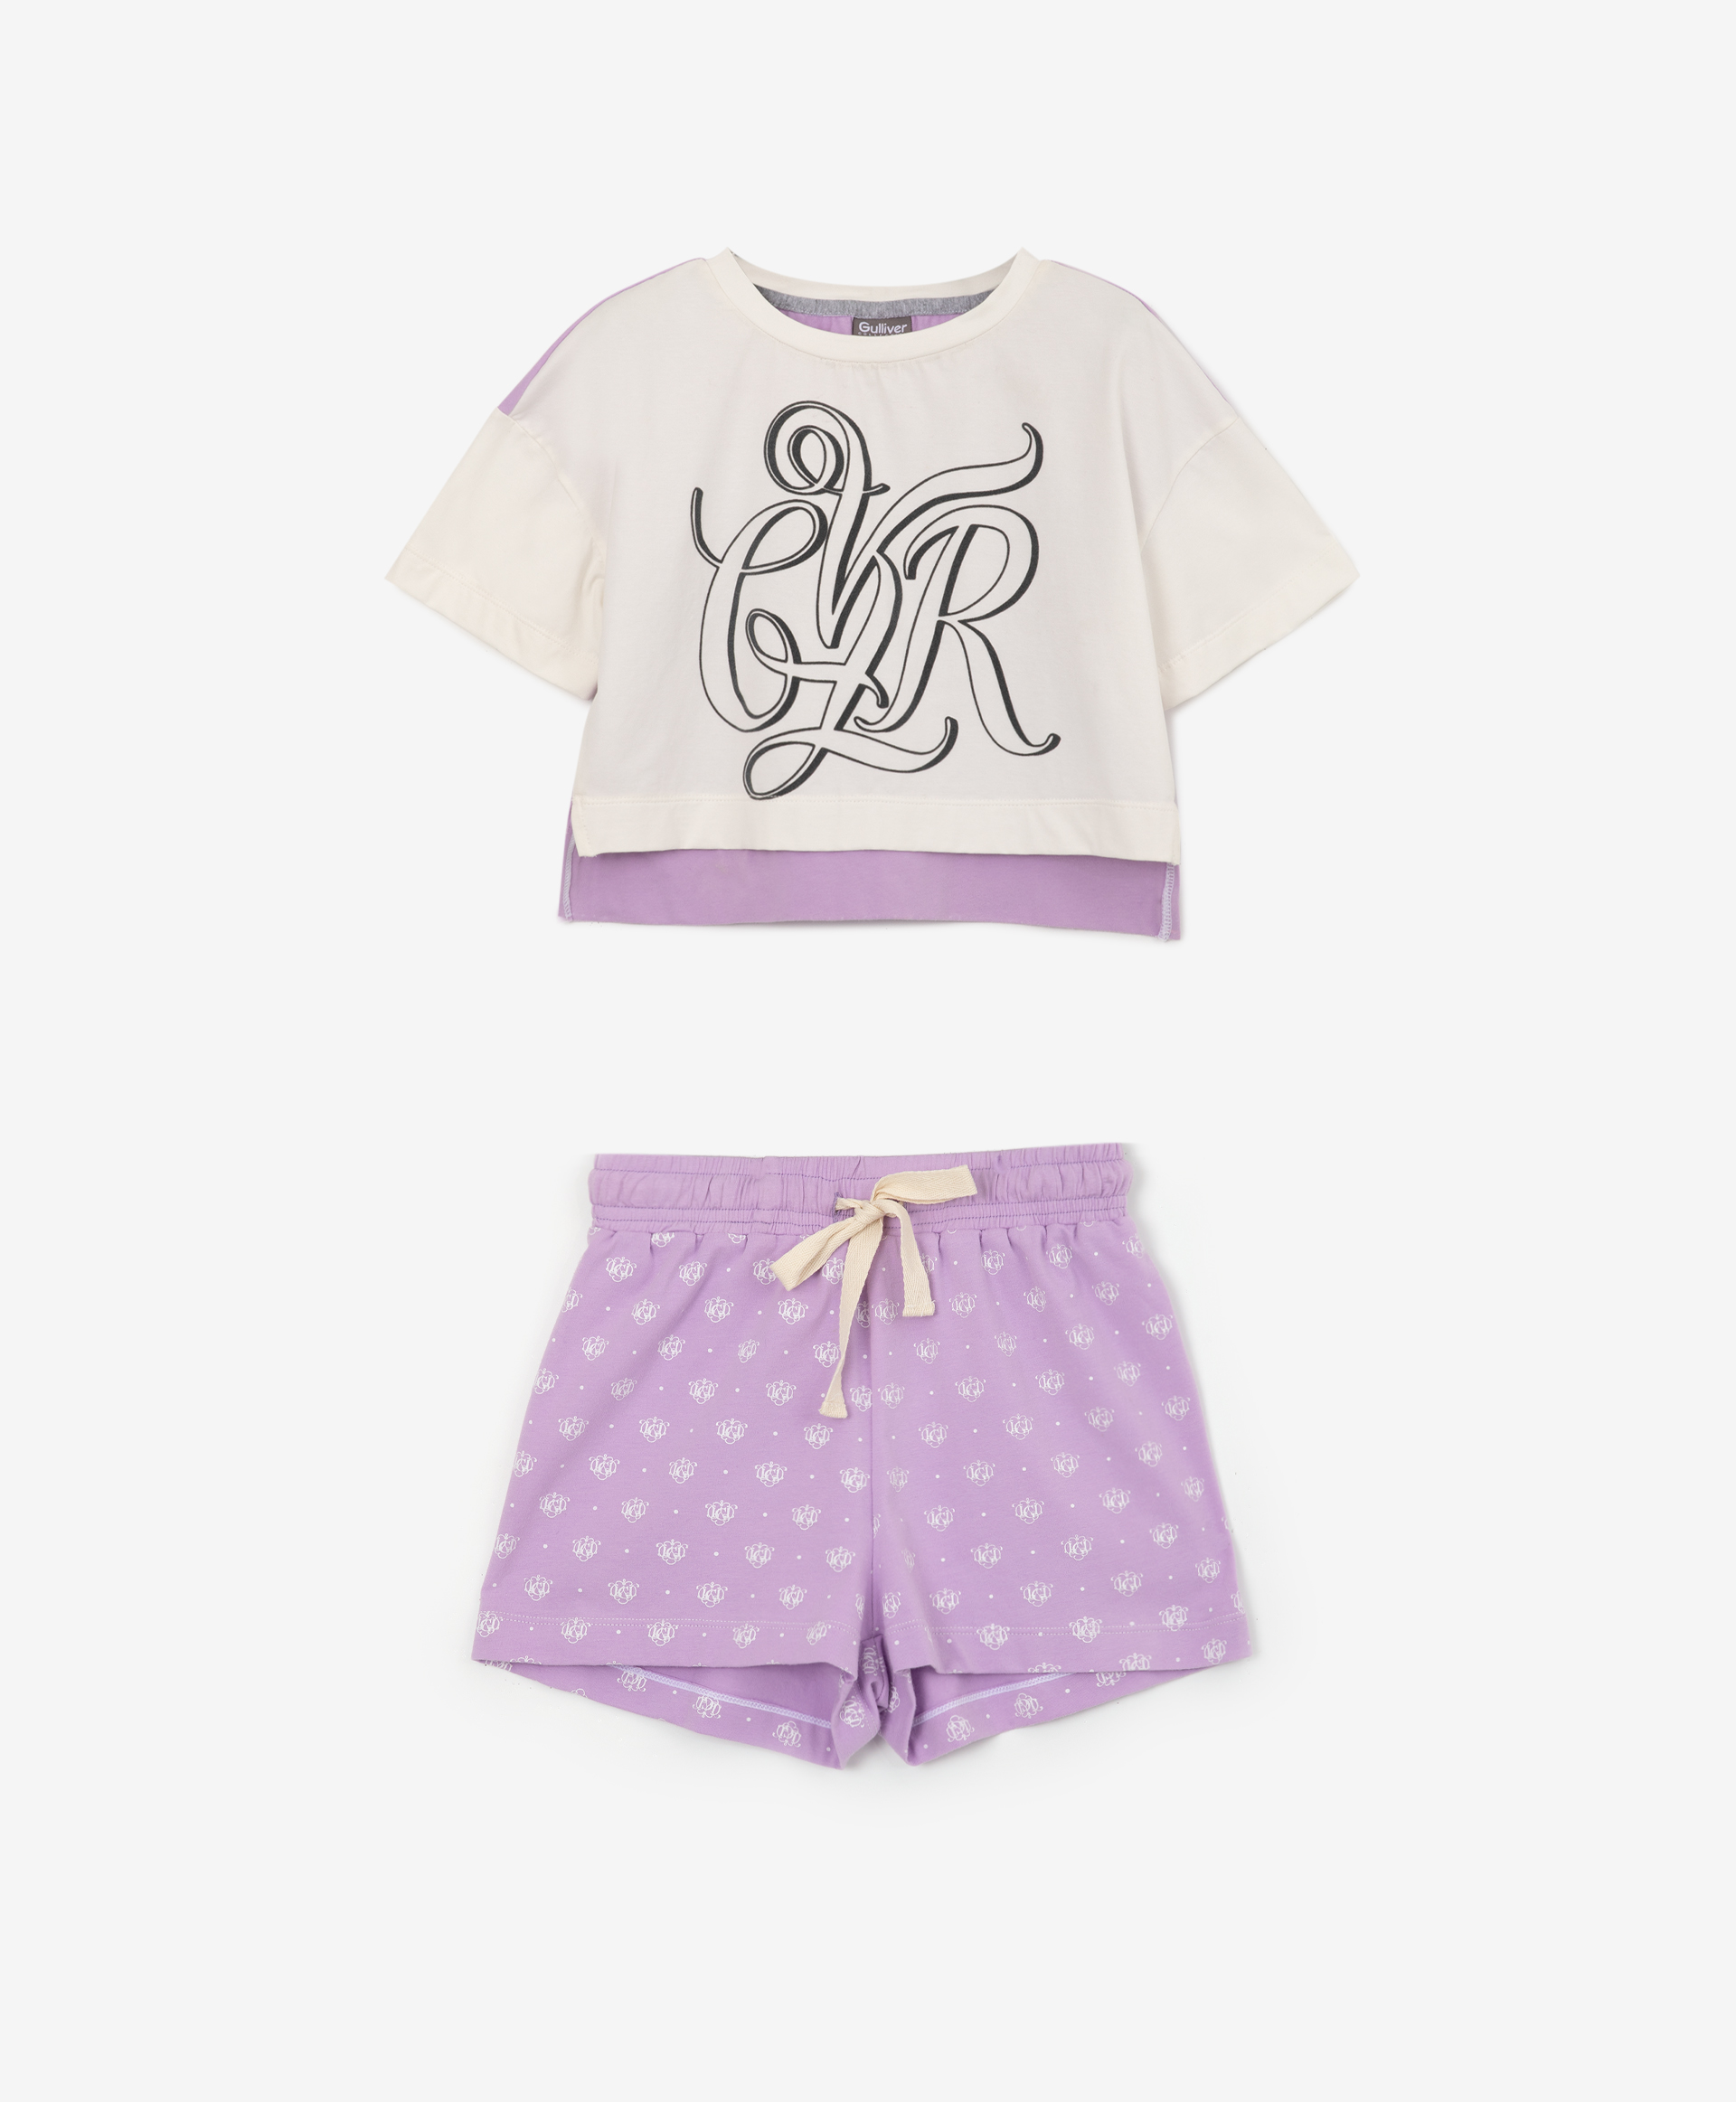 Пижама свободной формы с авторским рисунком Gulliver 22200GC9701, размер 146-152, цвет фиолетовый